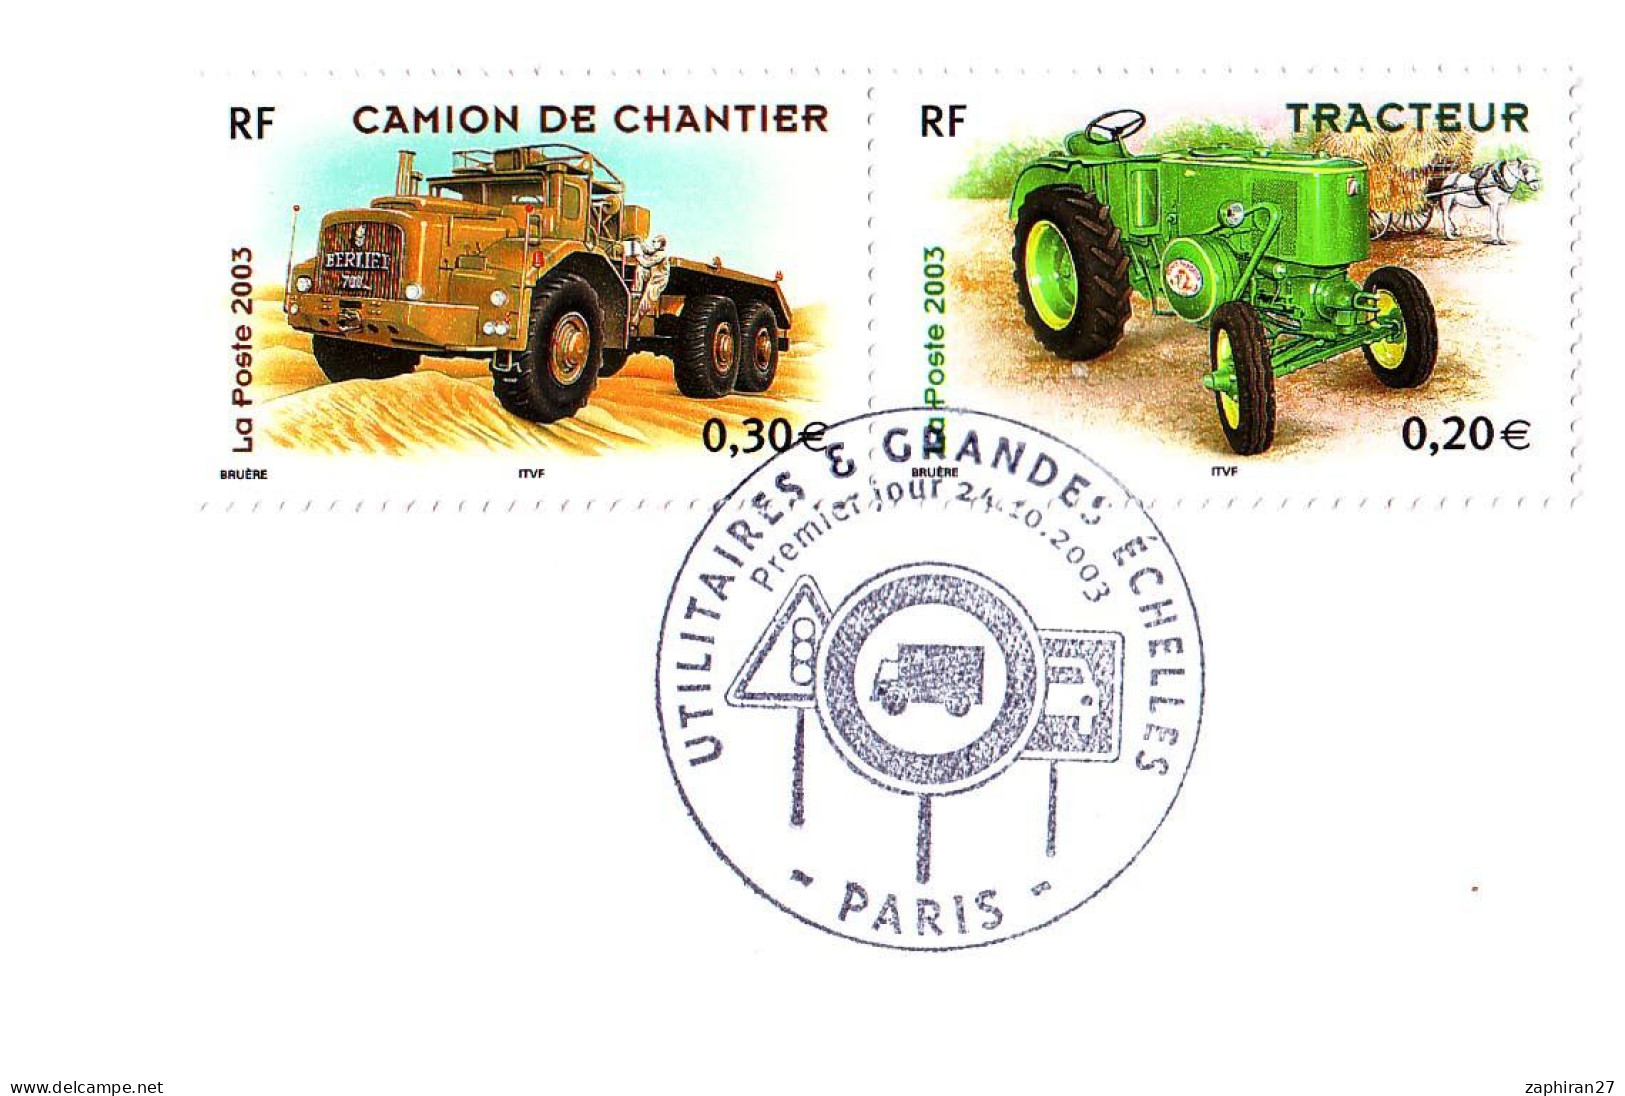 CAT TRANSORT : PARIS UTILITAIRES ET GRANDES ECHELLES / CAMION DE CHANTIER ET TRACTEUR (24-10-2003) #517# - Trucks